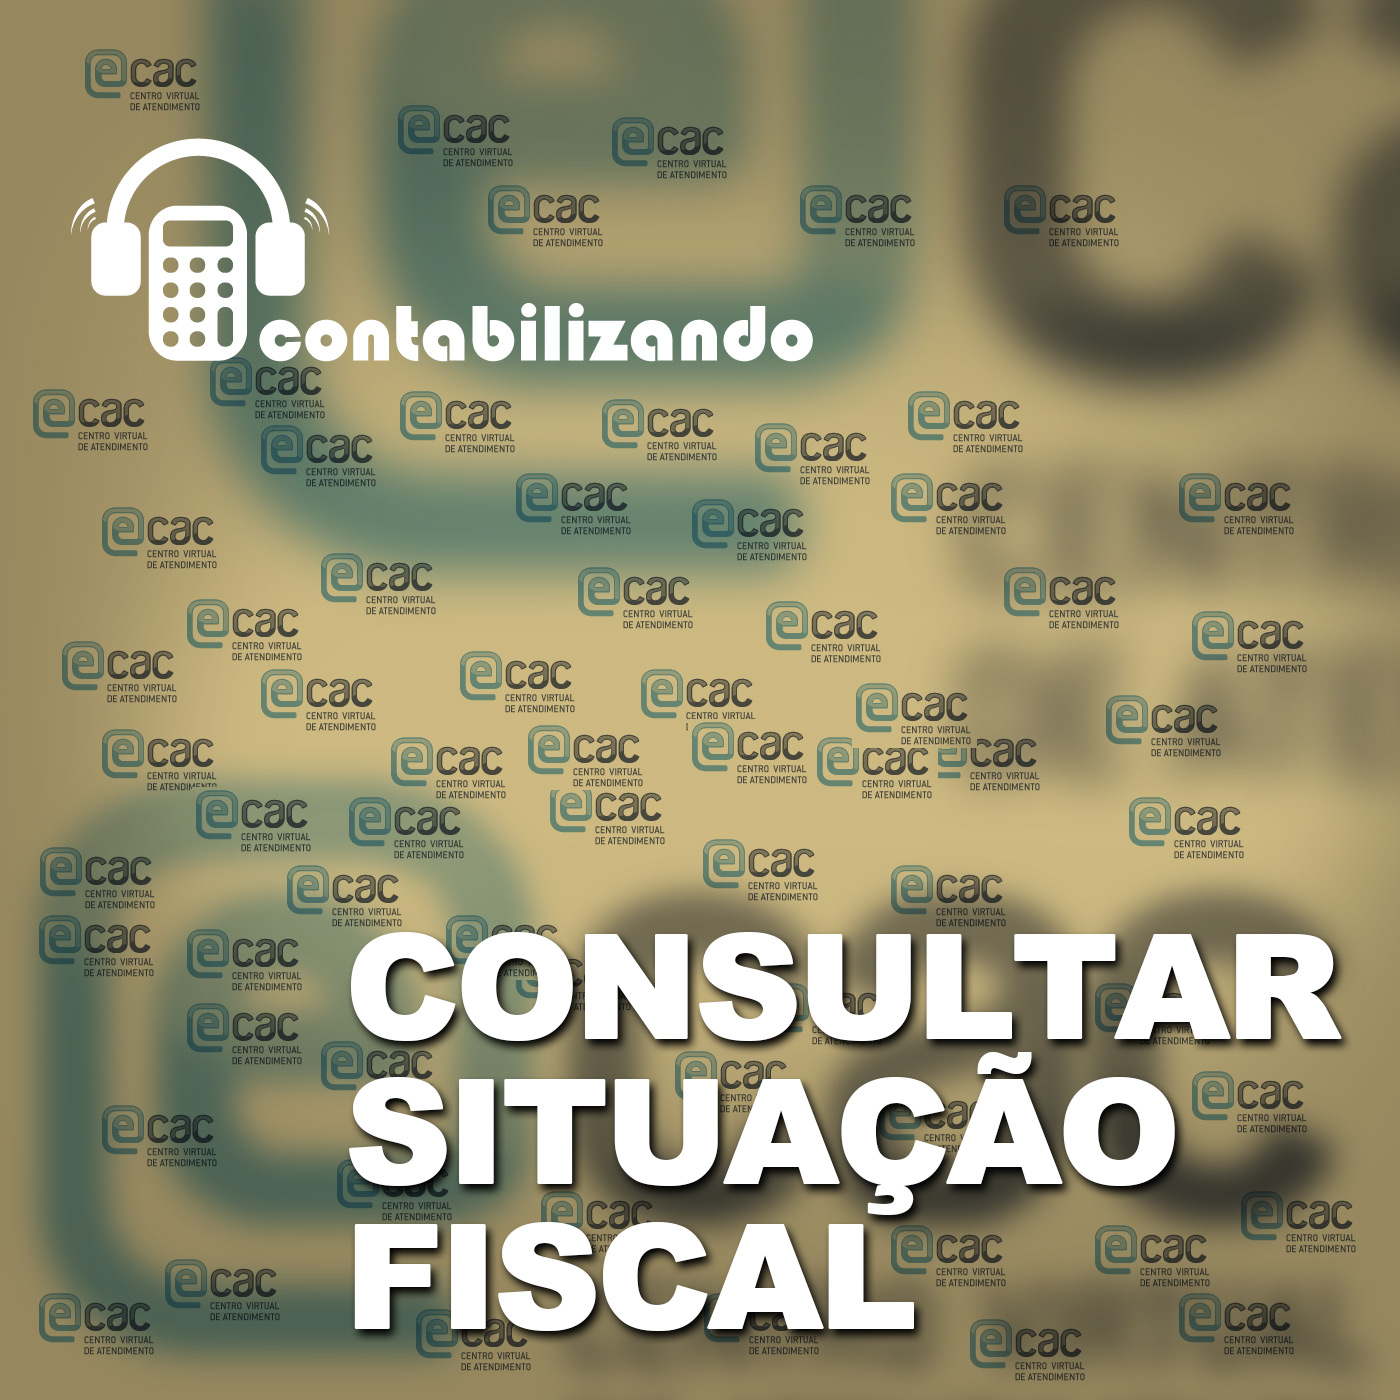 Contabilizando 13 - Situao Fiscal eCAC